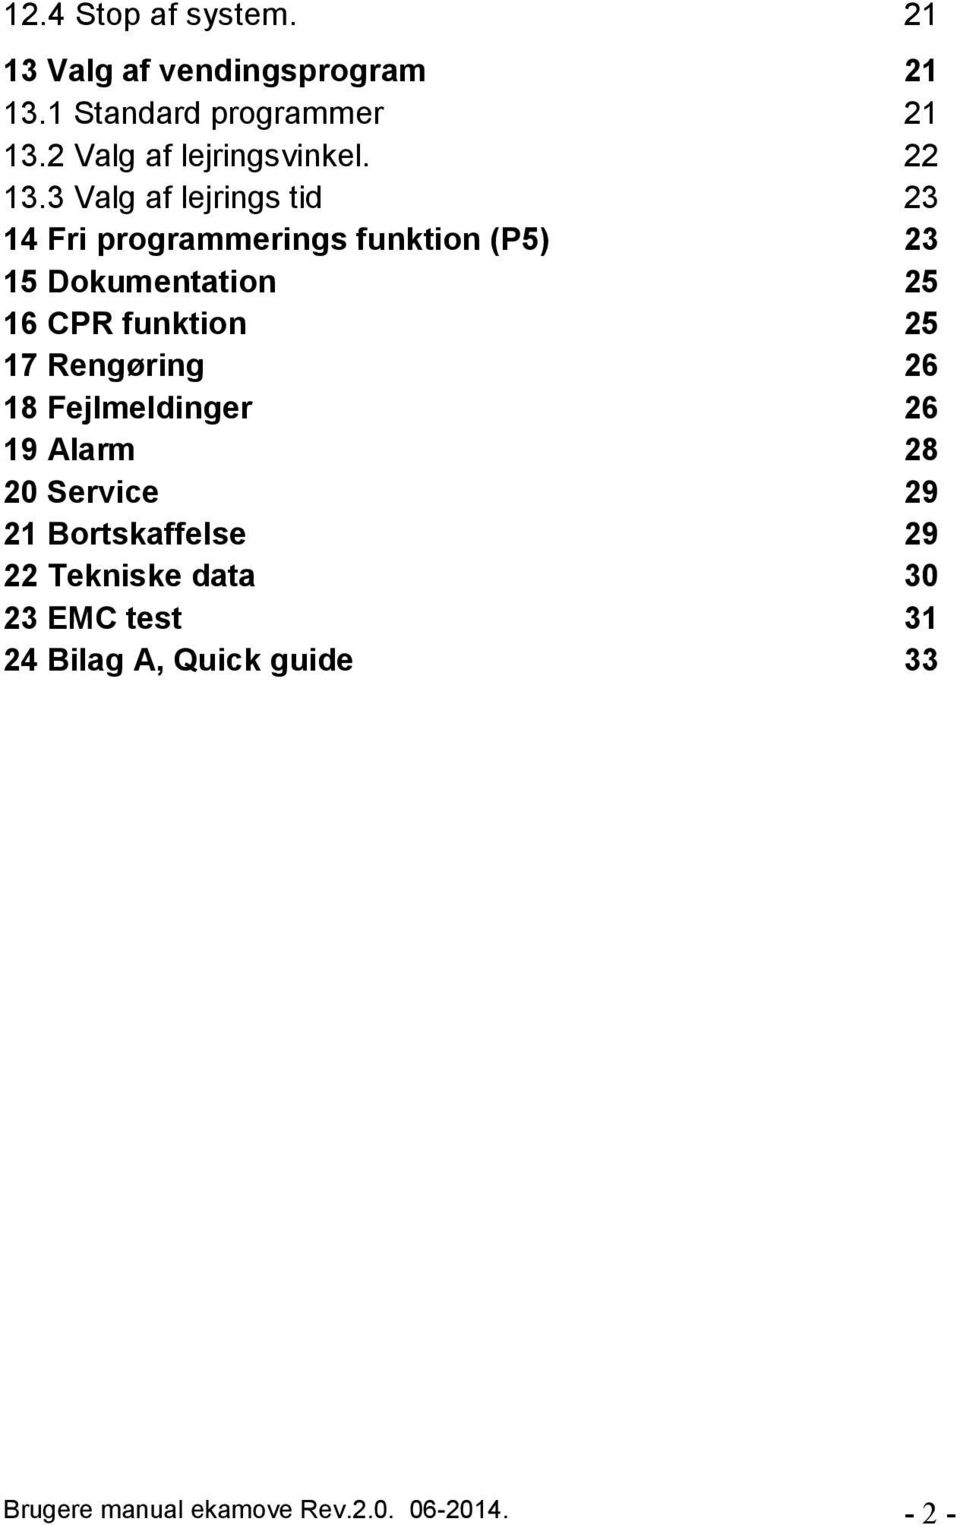 3 Valg af lejrings tid 23 14 Fri programmerings funktion (P5) 23 15 Dokumentation 25 16 CPR funktion